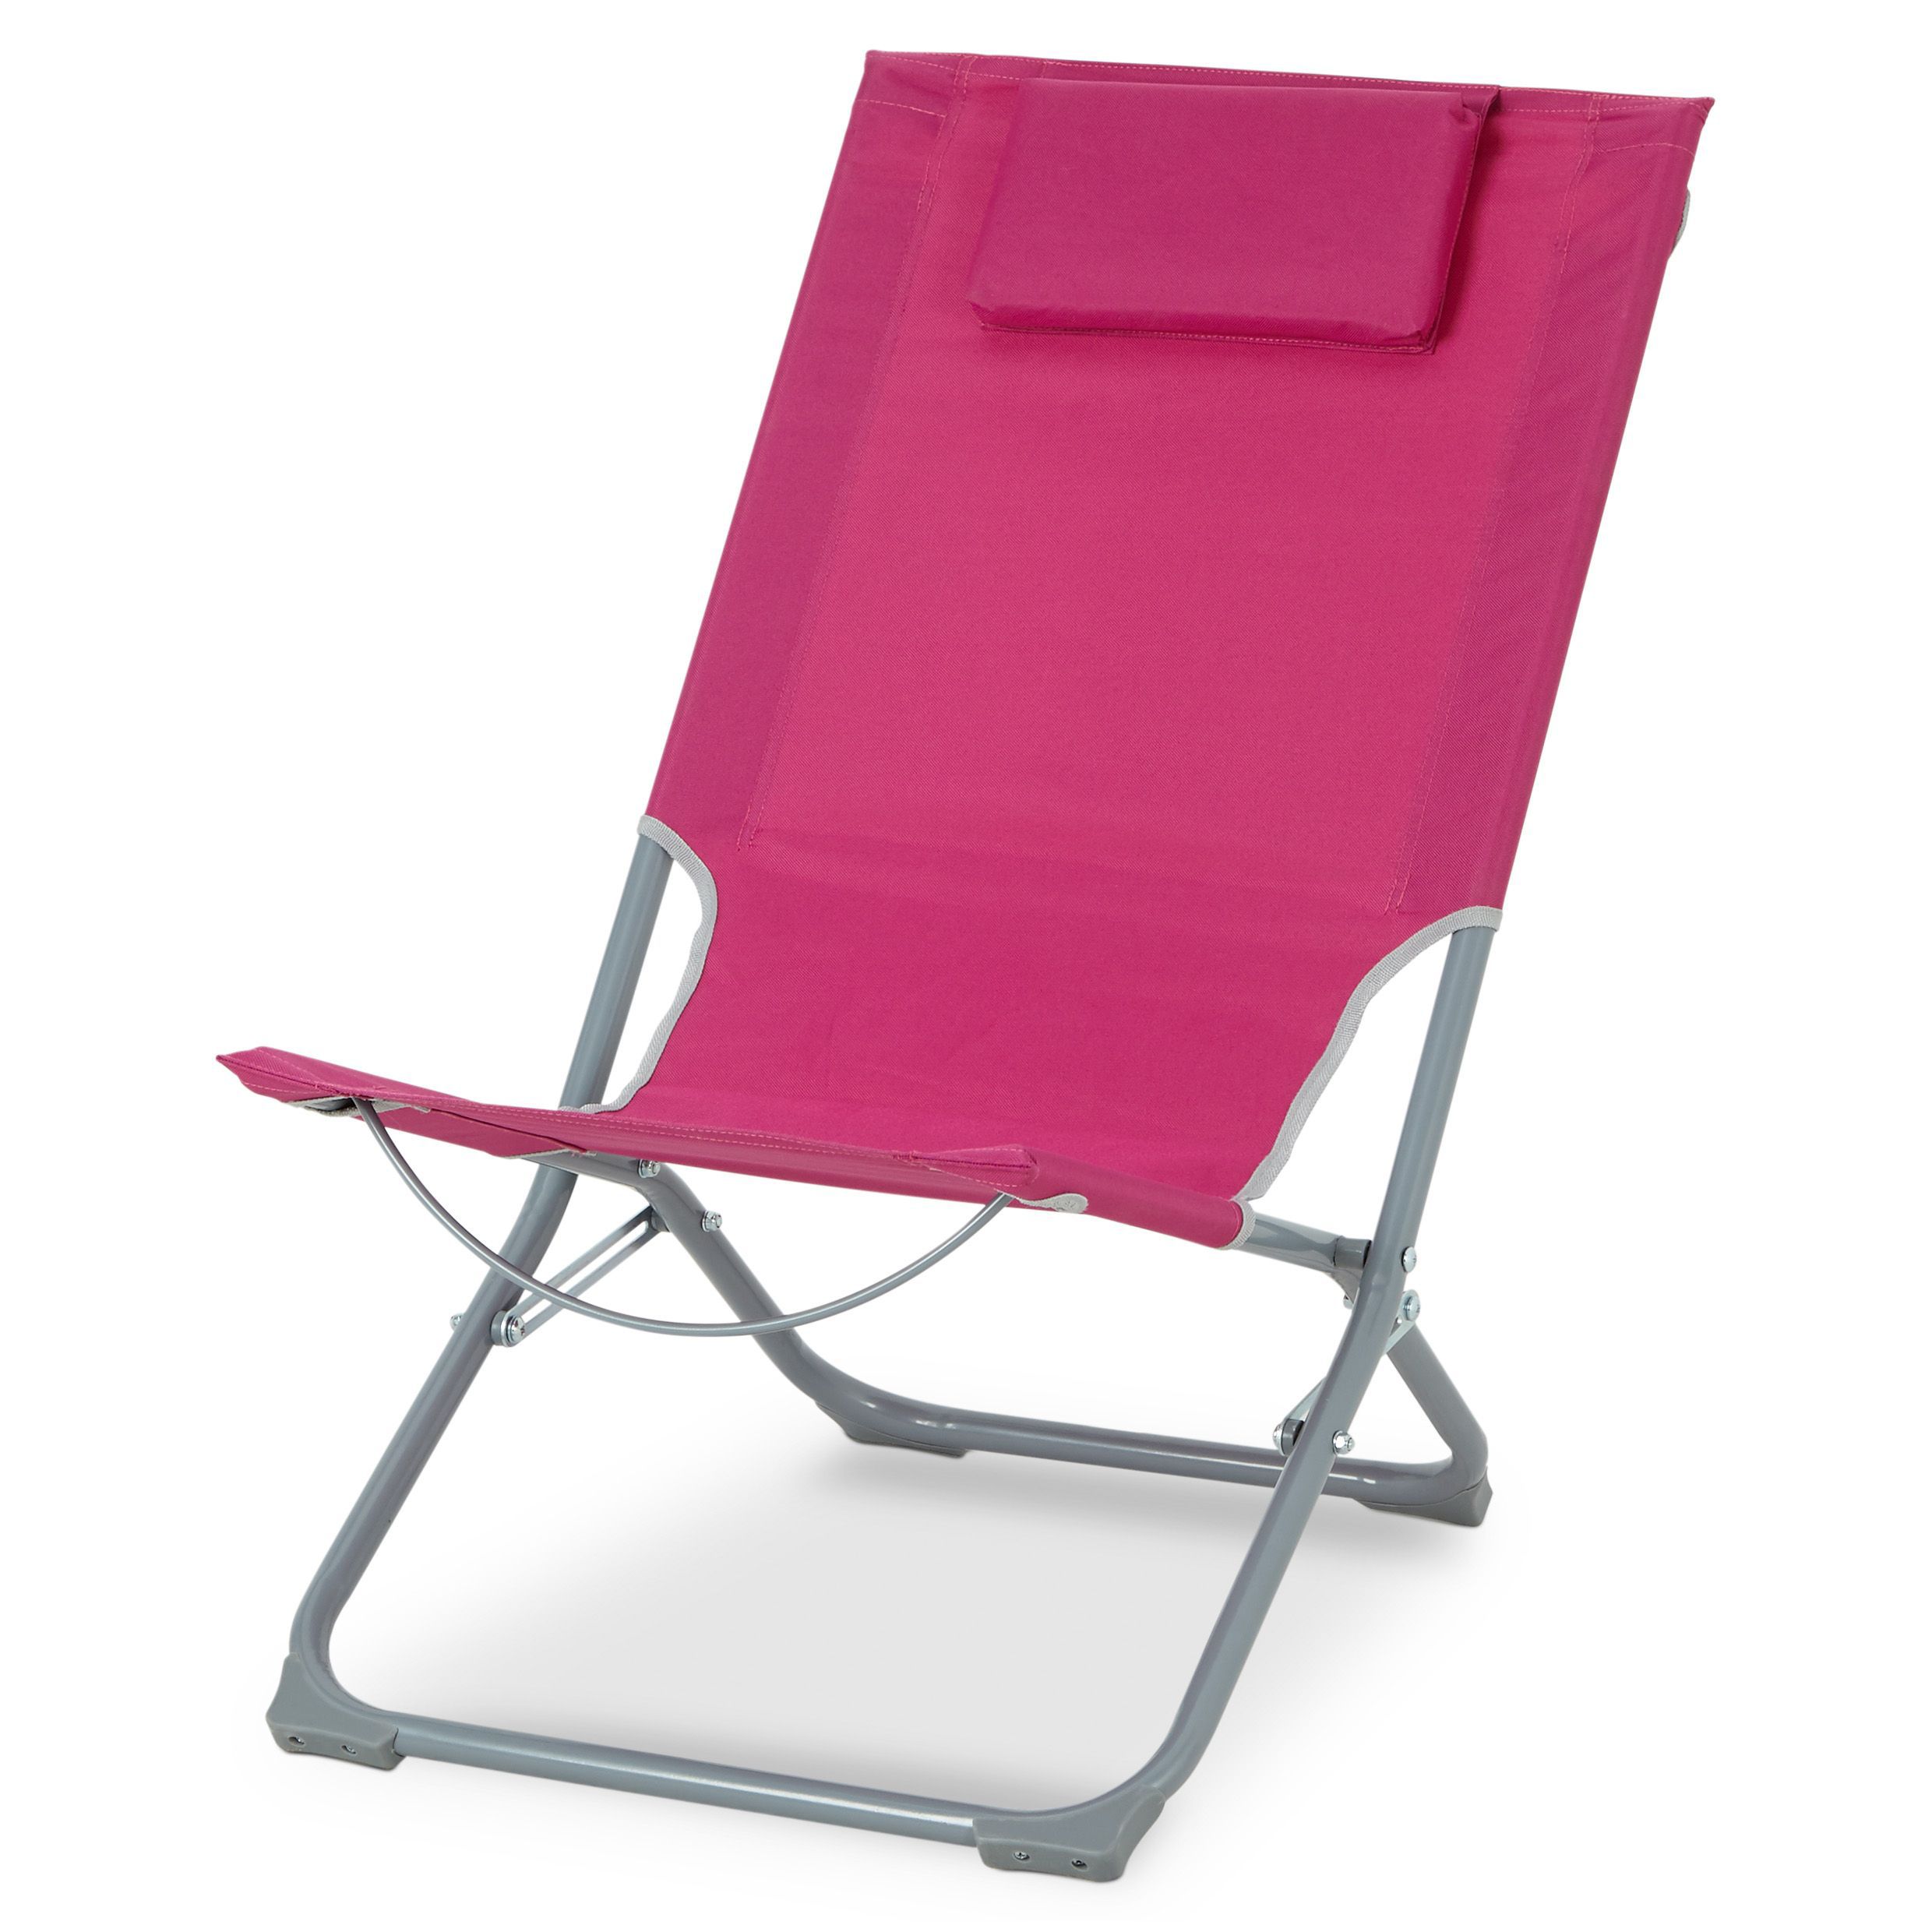 Curacao Pink Metal Beach Chair